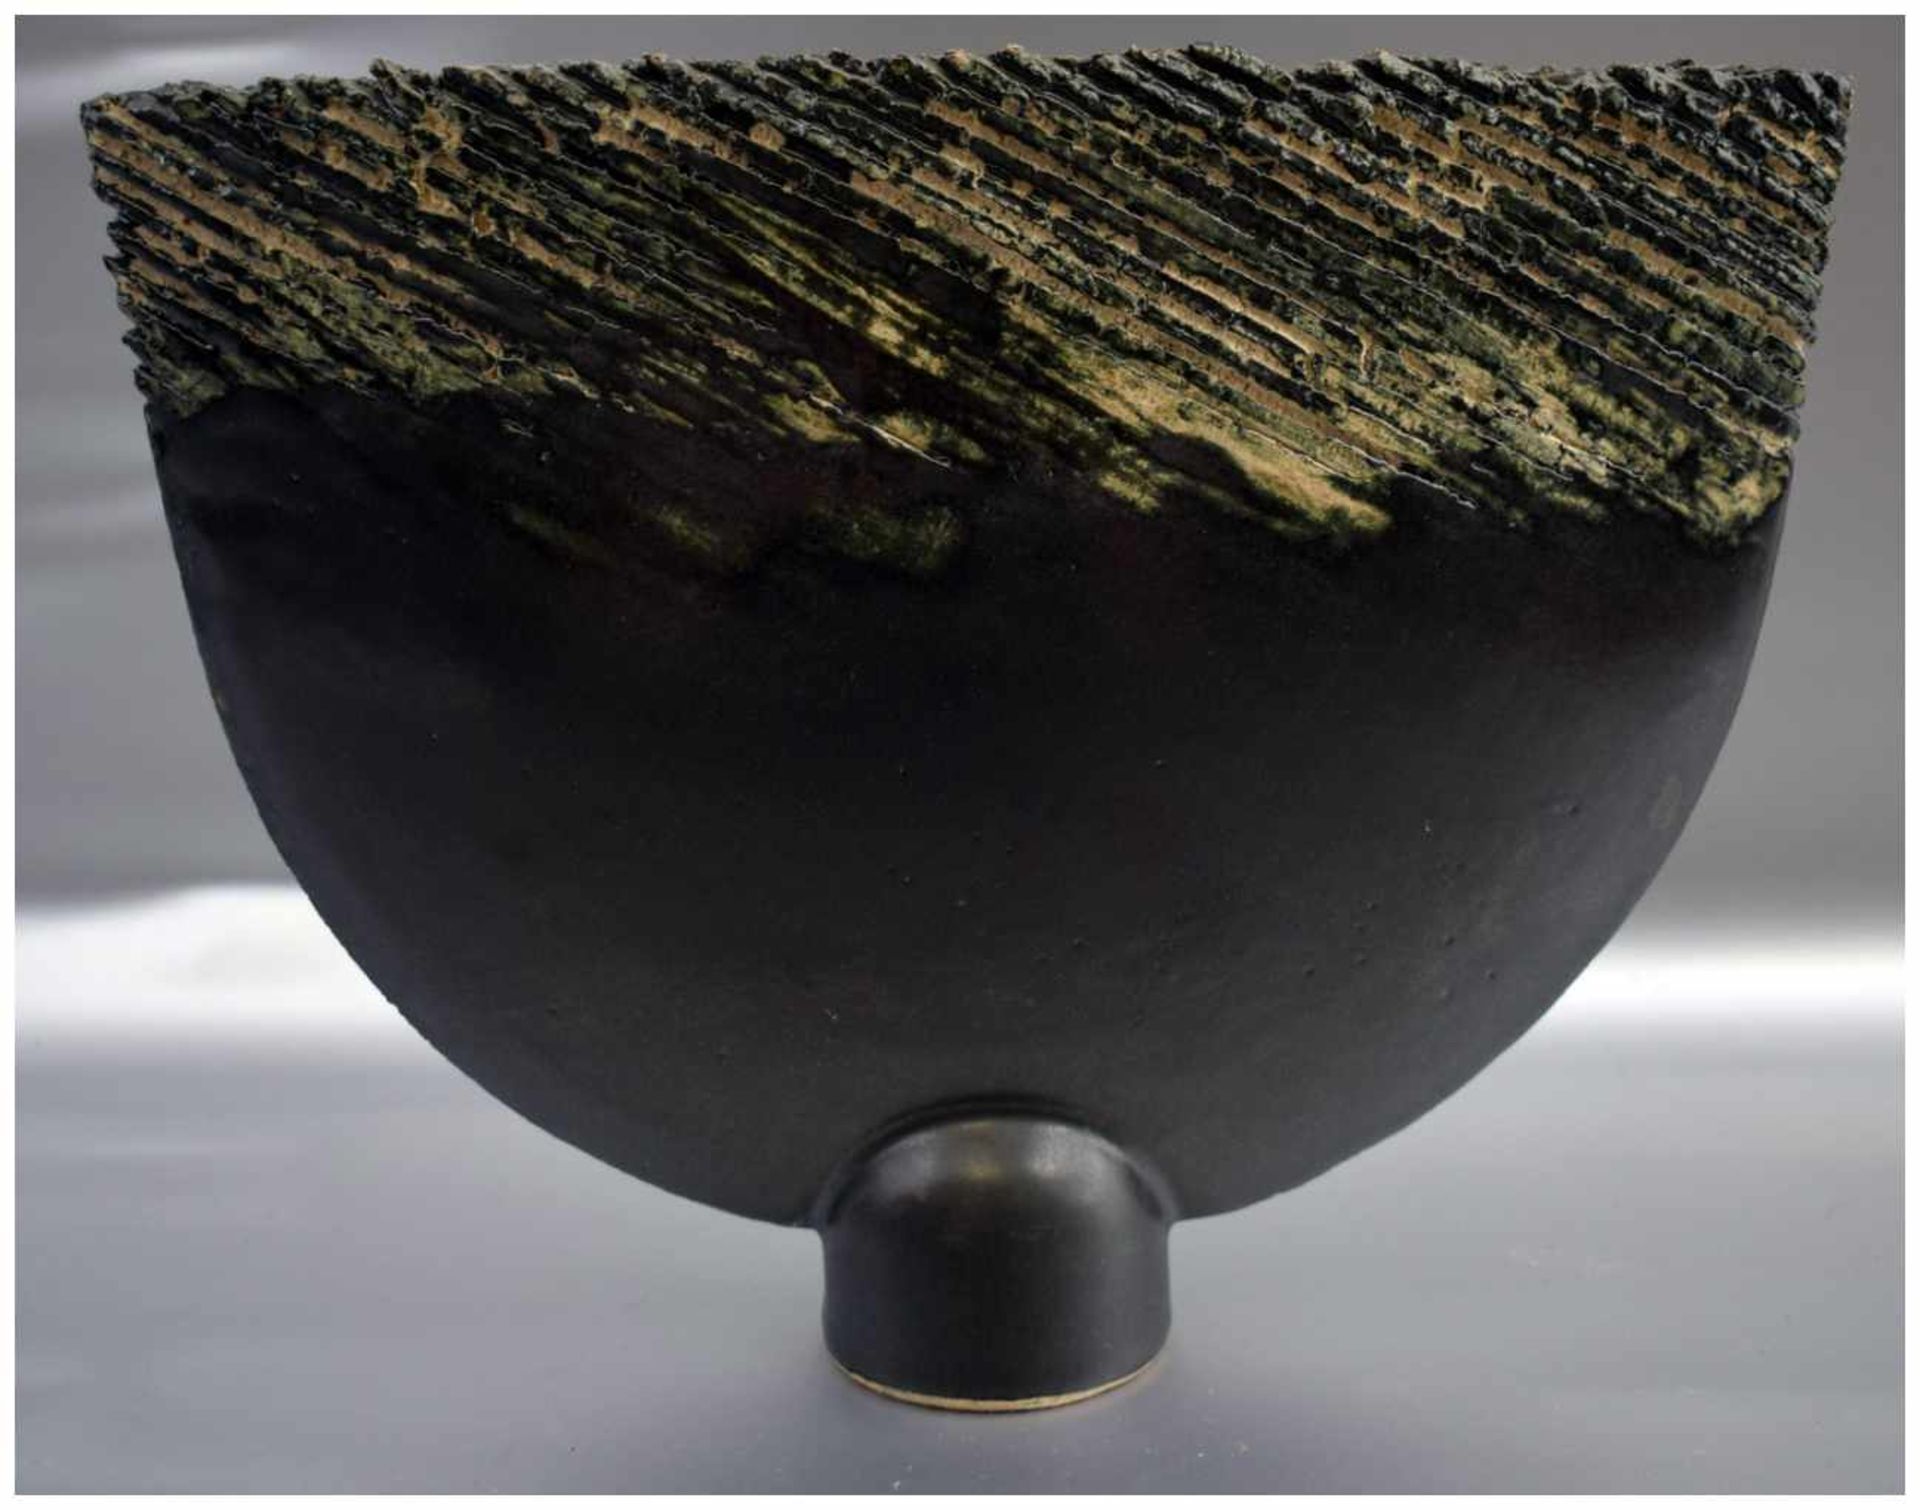 Vase oval, schwarz und grün glasiert, runder Fuß, sign. Inge Gerlach, H 23 cm, B 31 cm, 70er/80er